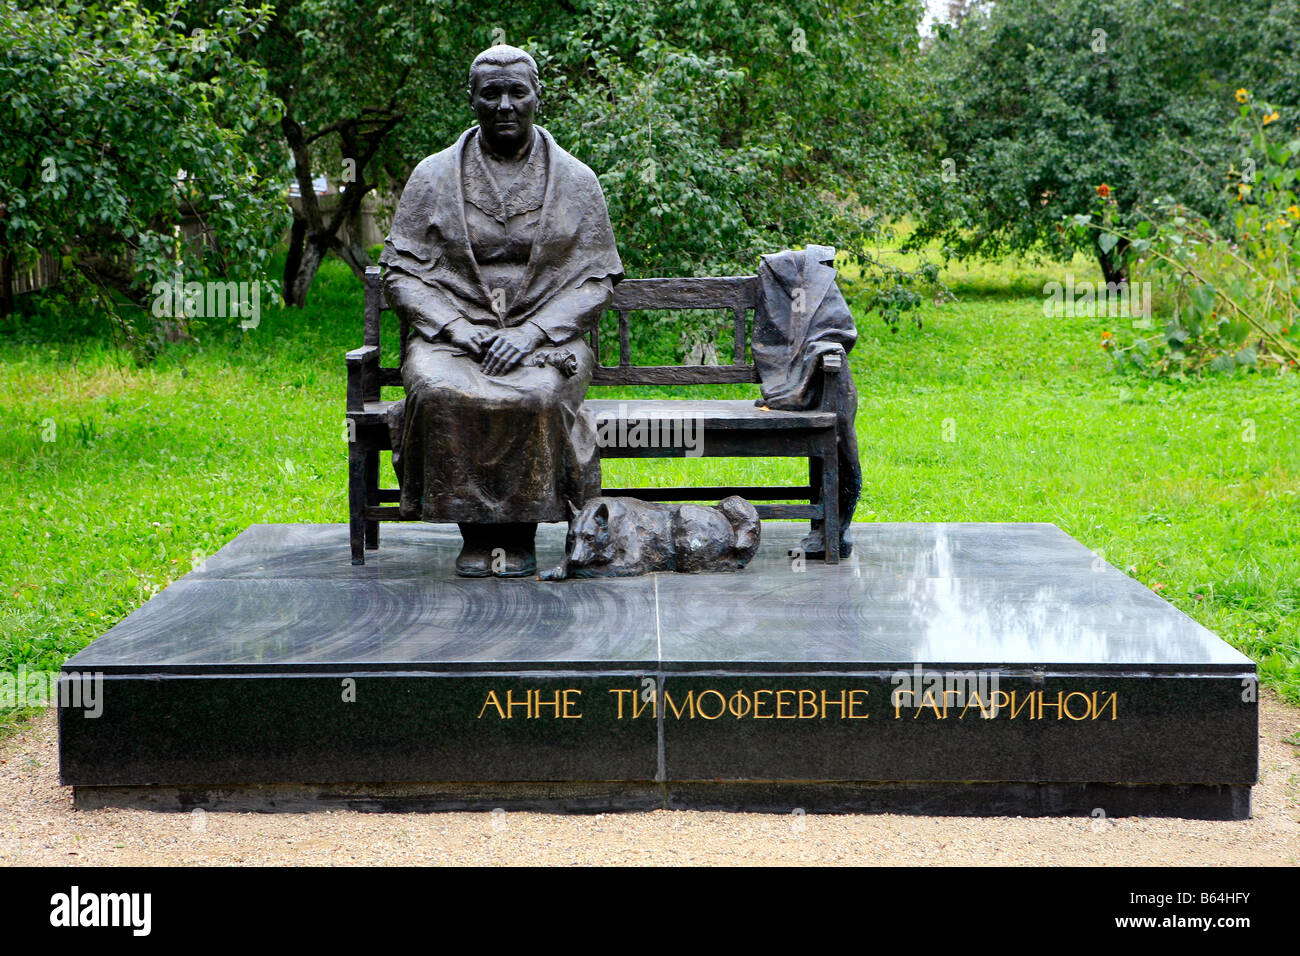 Monument à Anna Timofeyevna Gagarina (1903-1984), mère du premier humain dans l'espace Youri Gagarine à 3068 (anciennement Klushino), Russie Banque D'Images